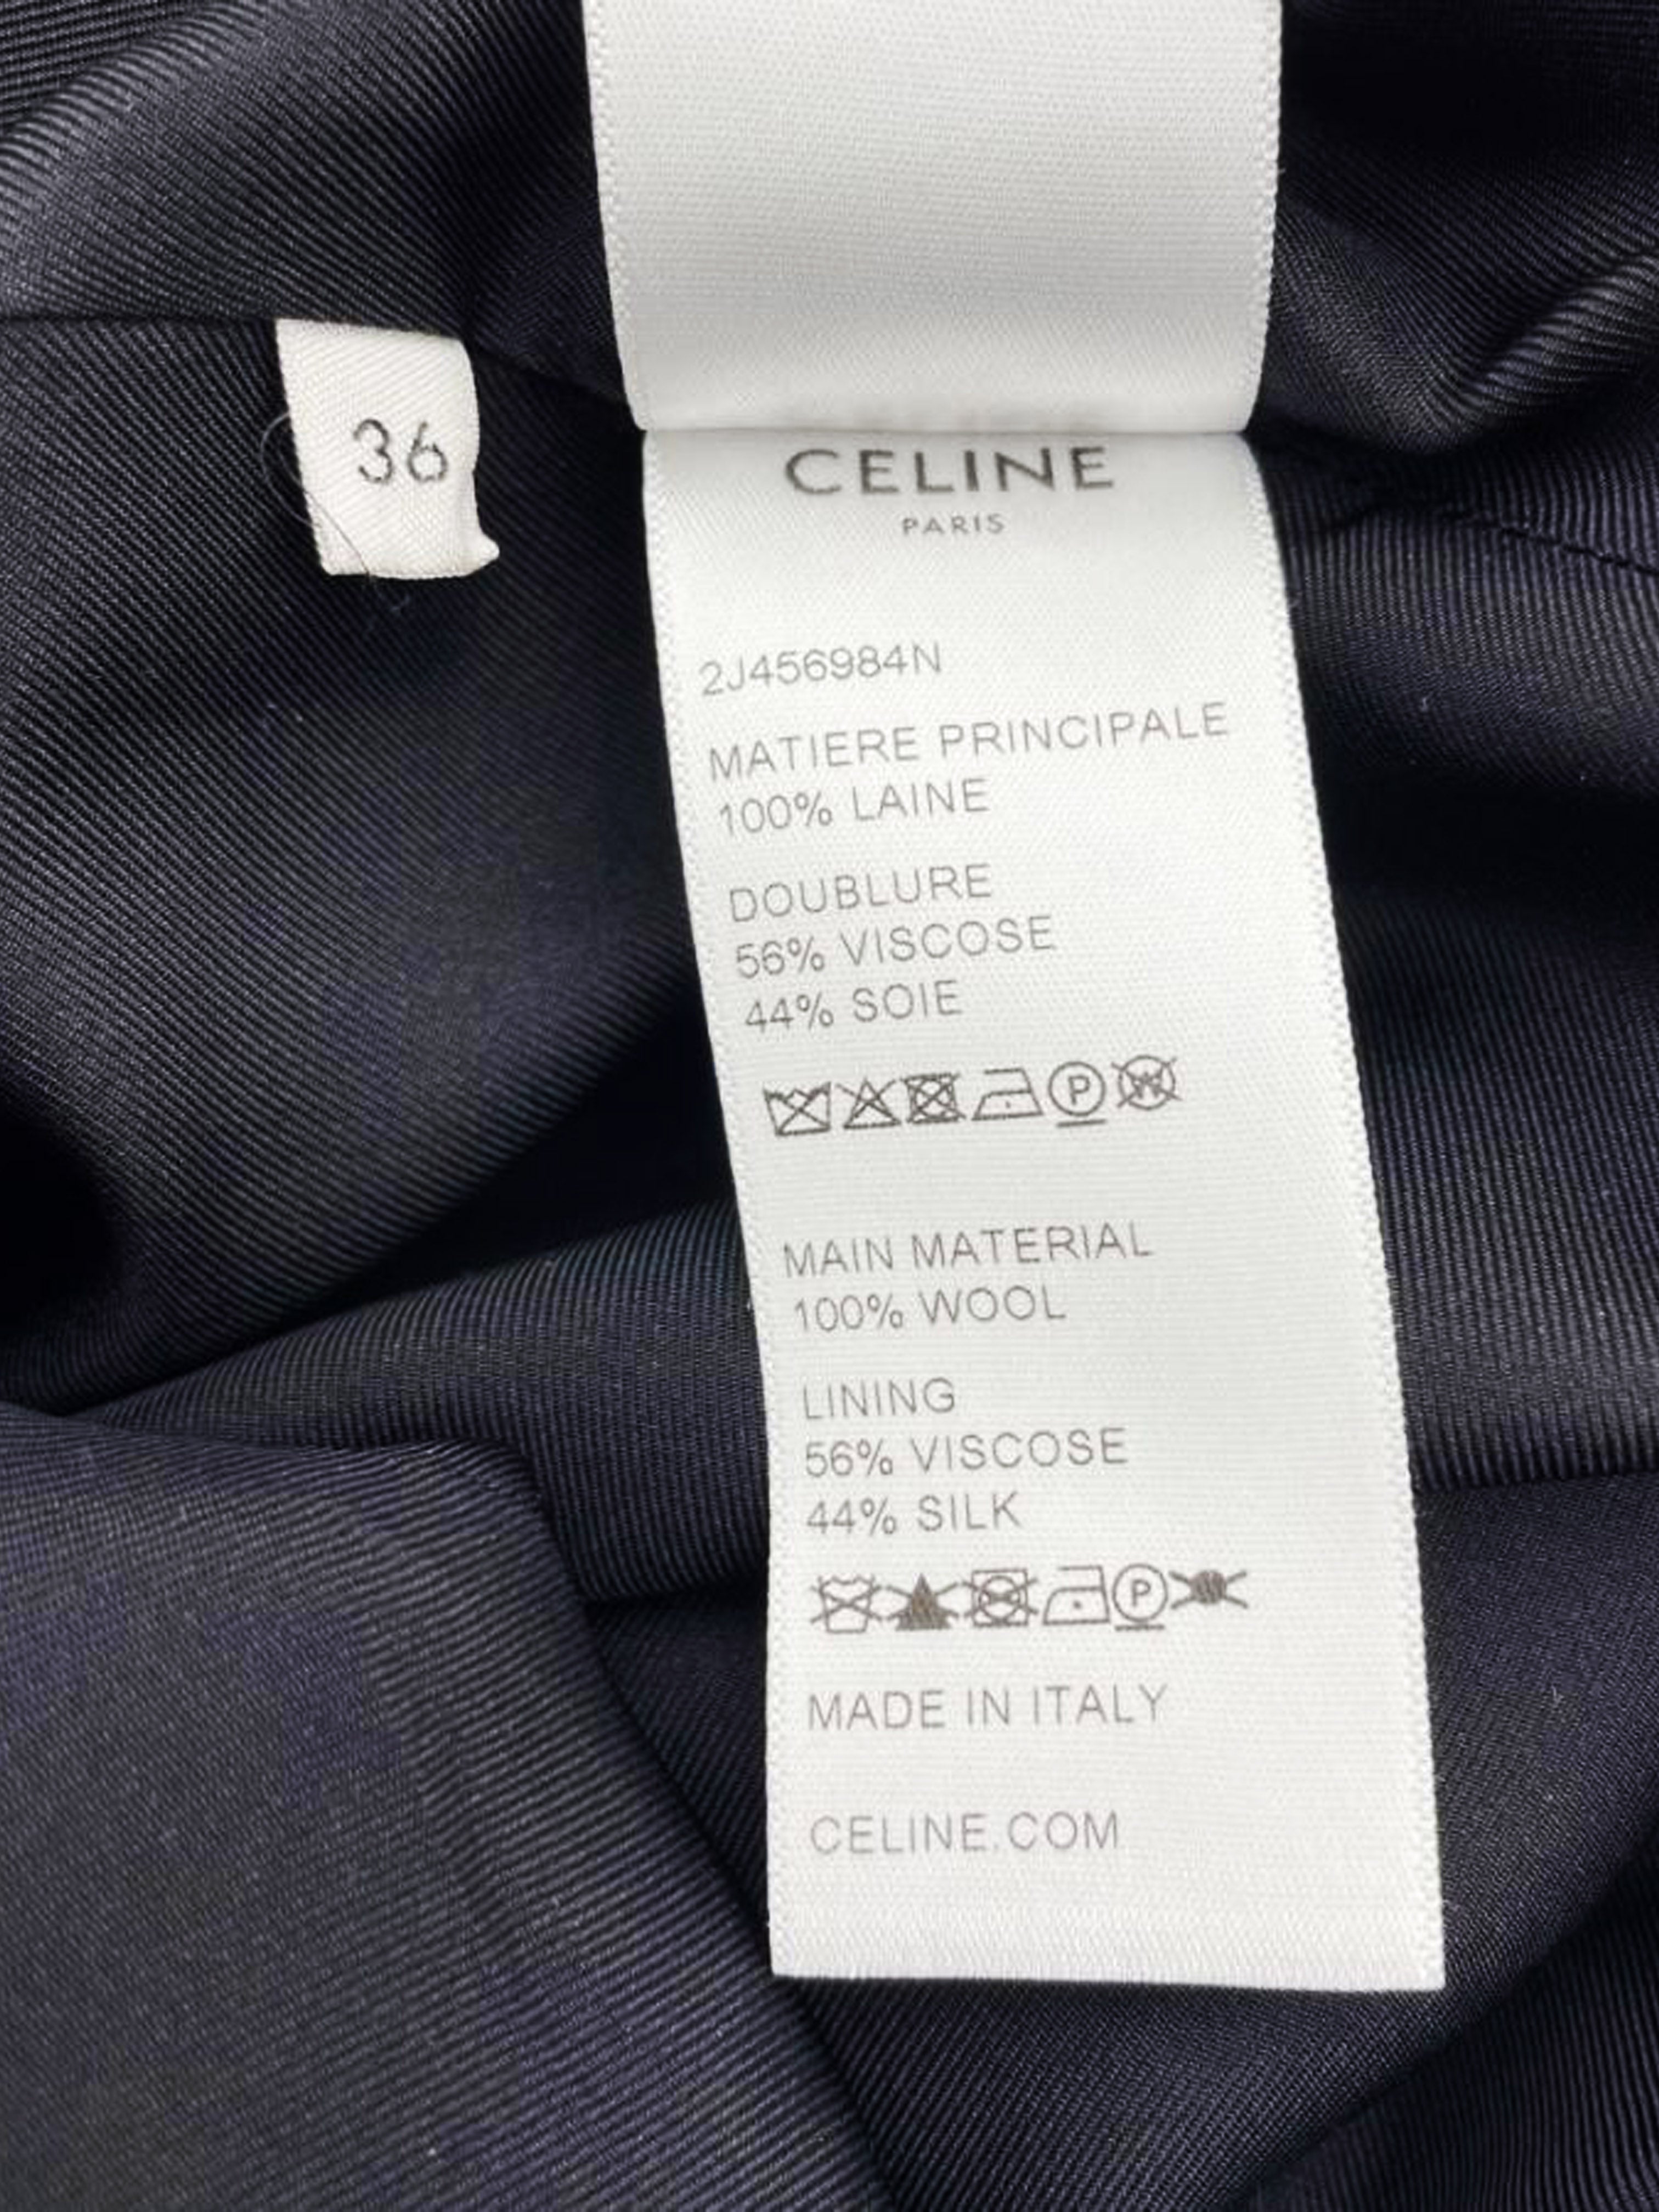 Celine SS 2022 Gingham Ruffled Short Skirt